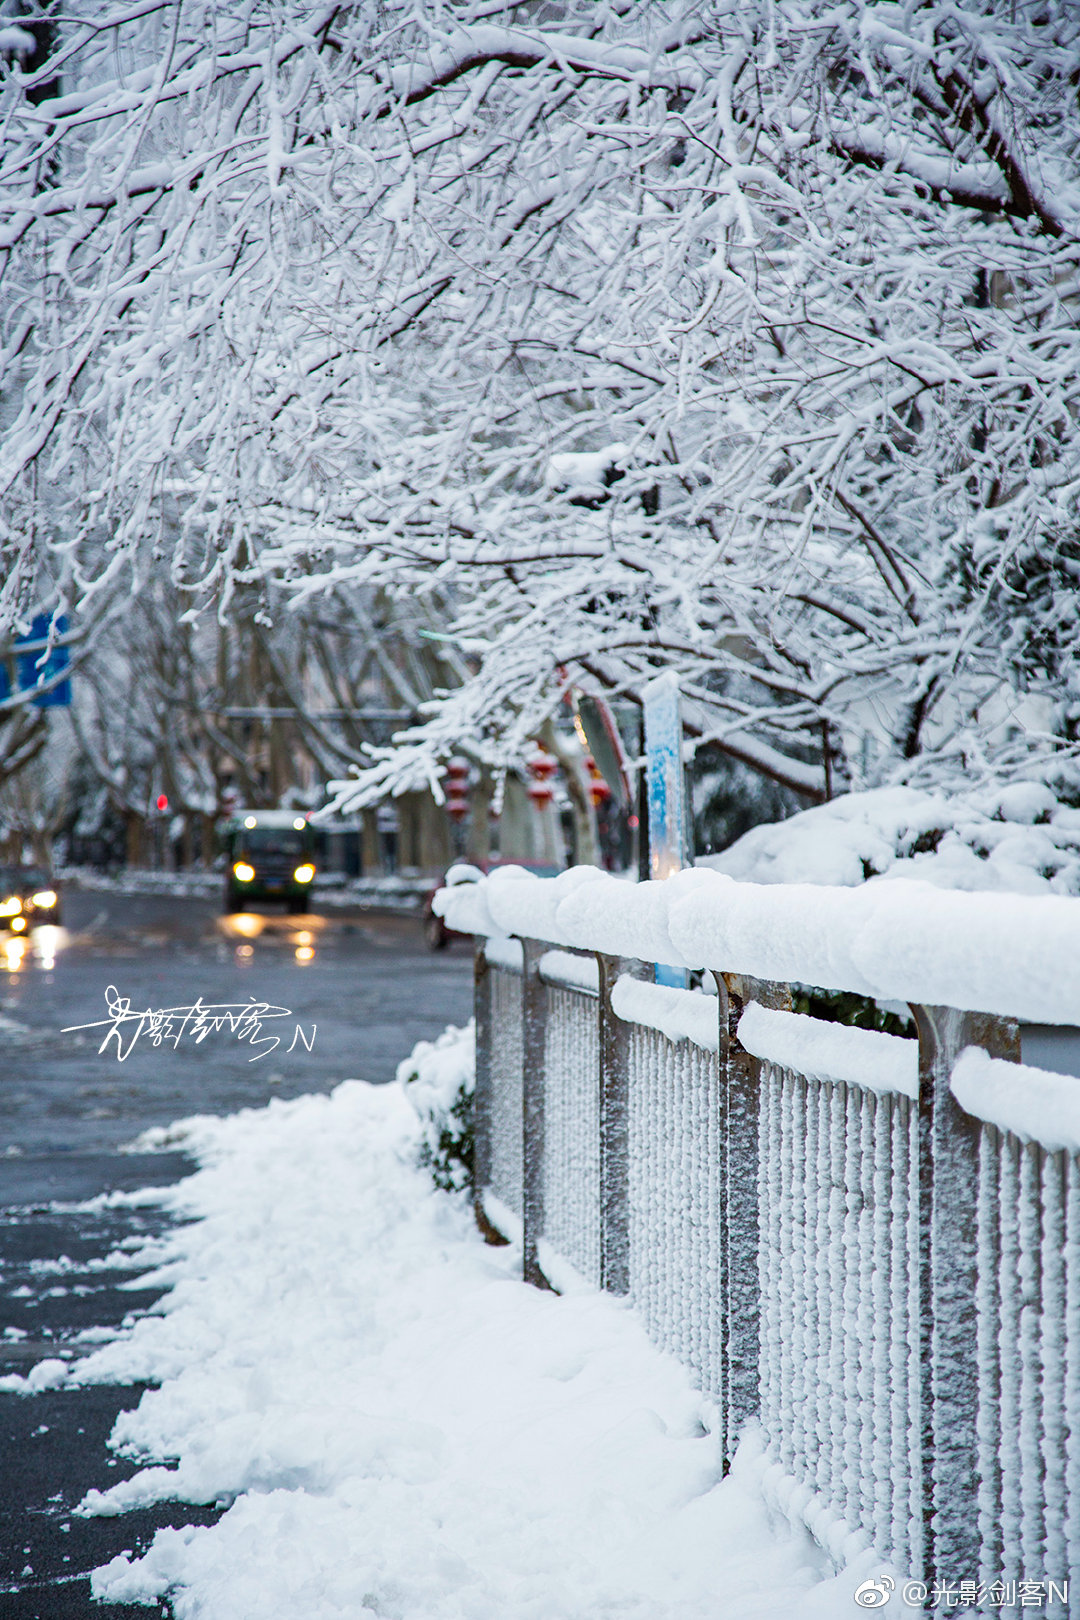 早安!金陵·雪 在城市中穿梭,走过大街小巷,看看走过的路